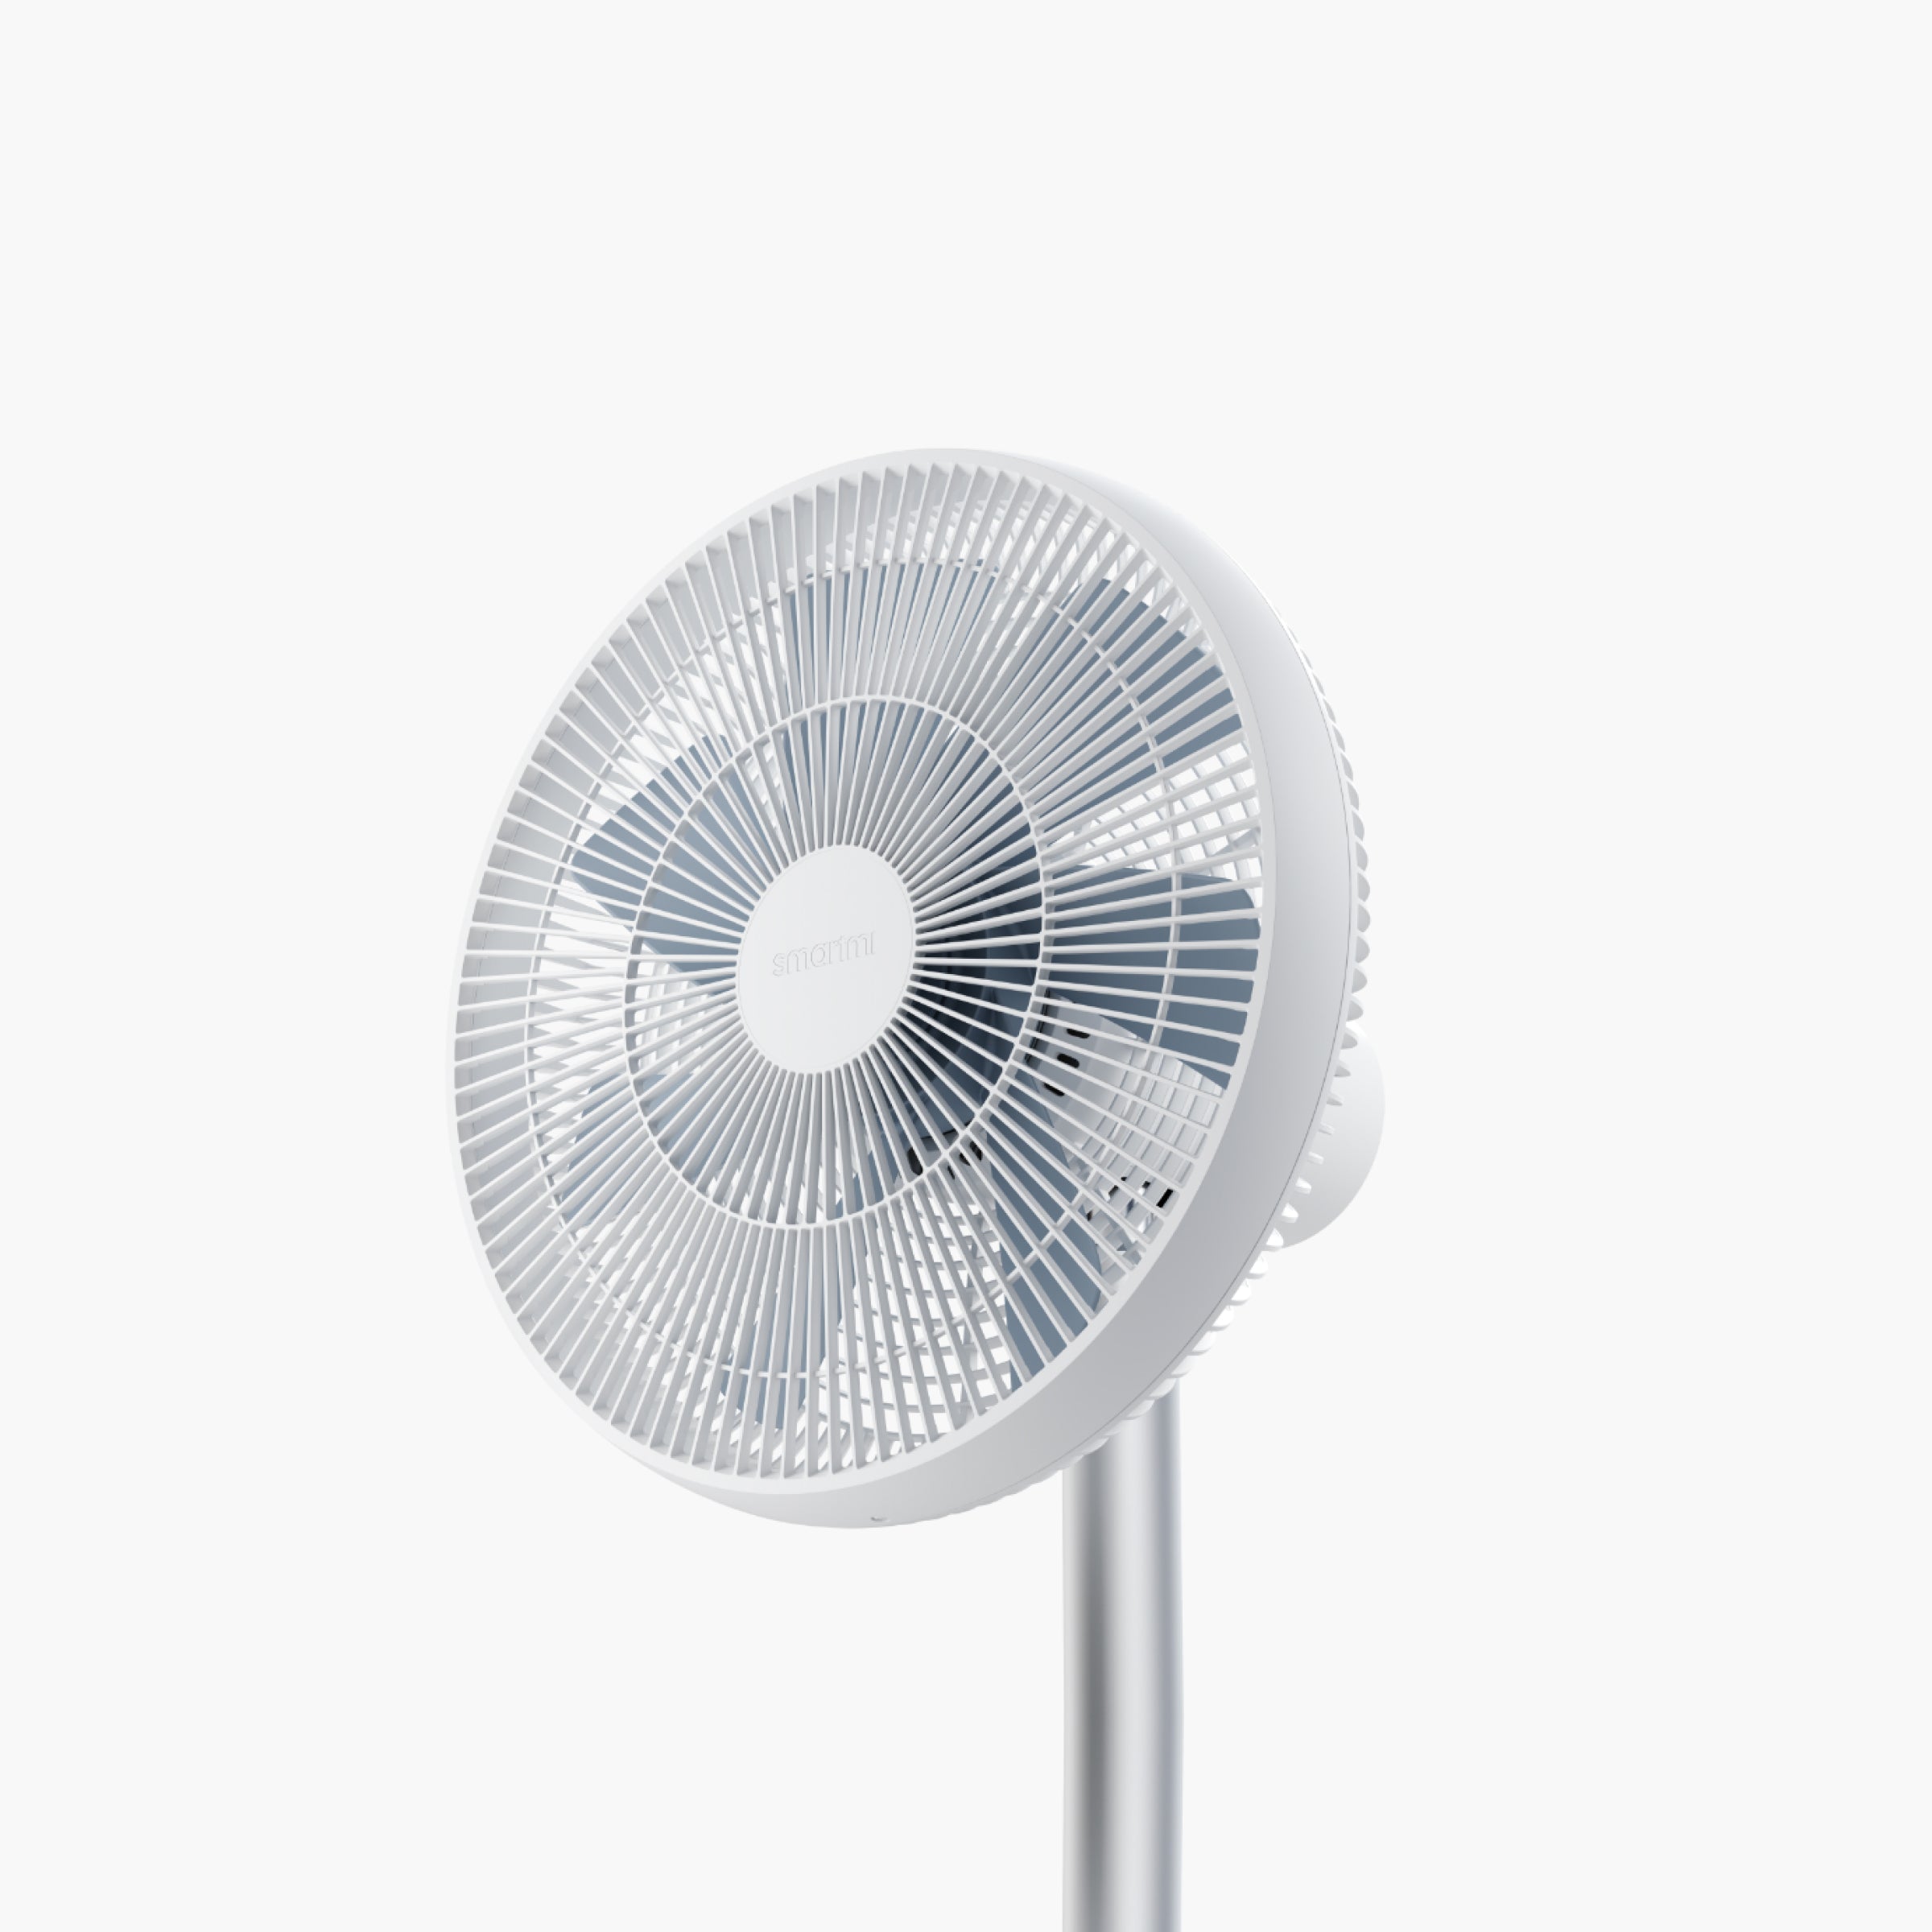 Smartmi Standing Fan 3 - Smart Version